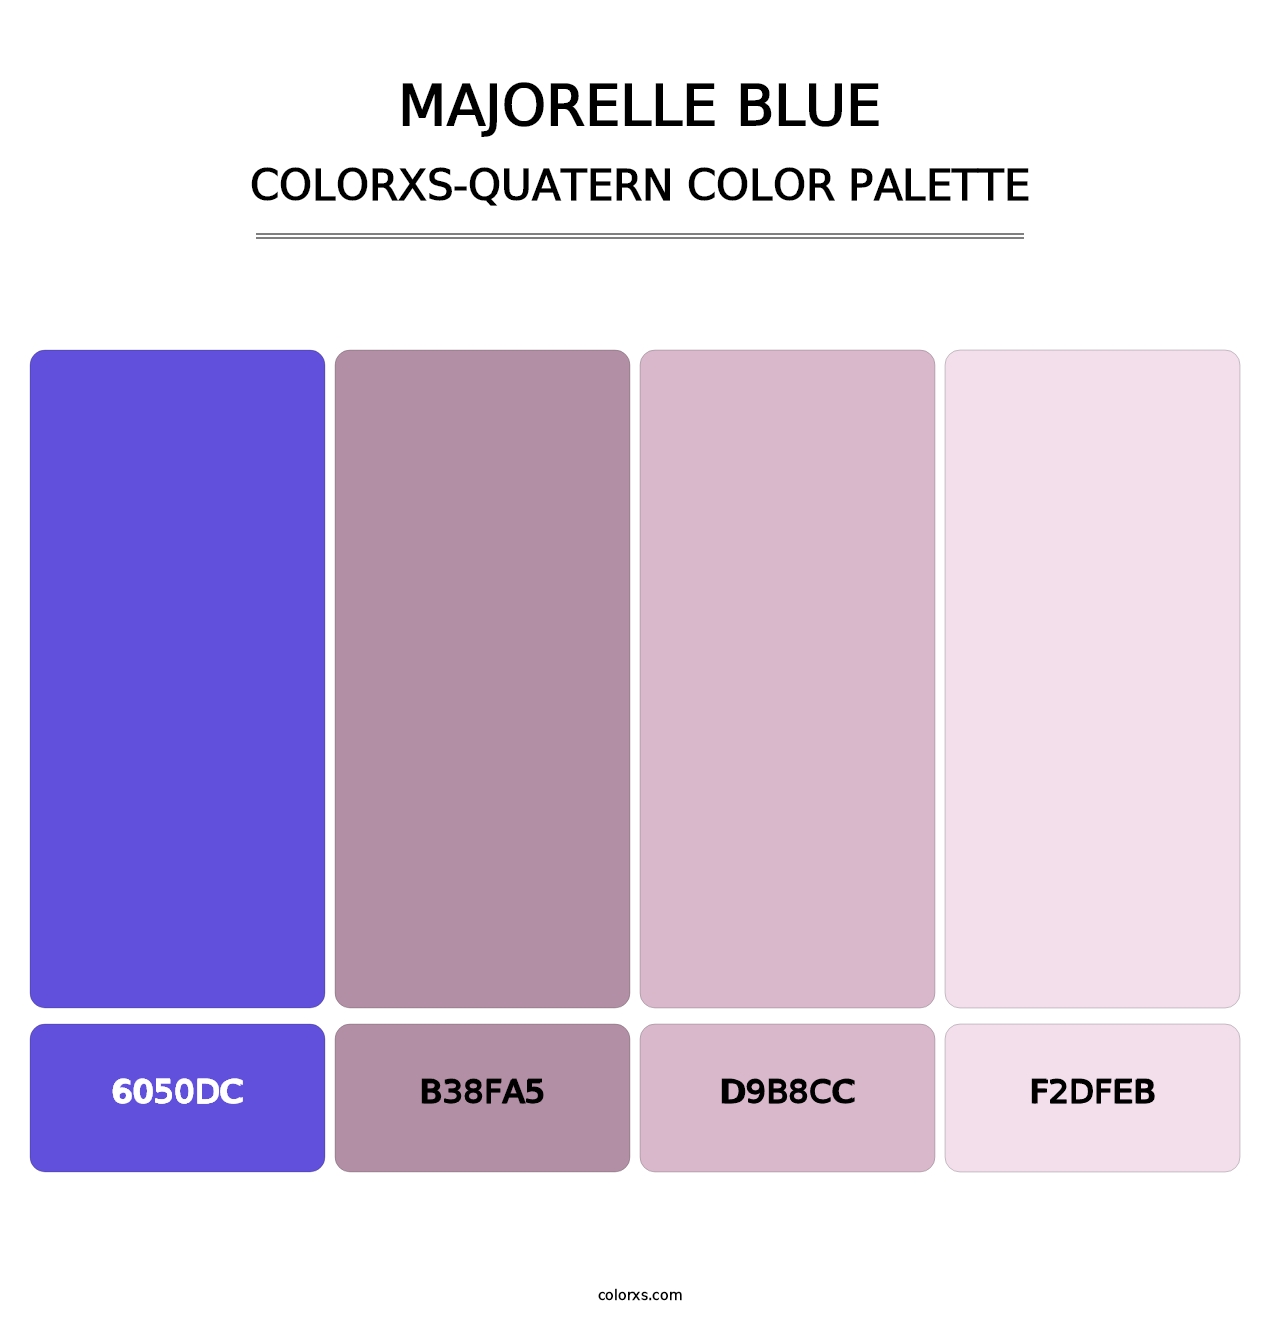 Majorelle Blue - Colorxs Quatern Palette